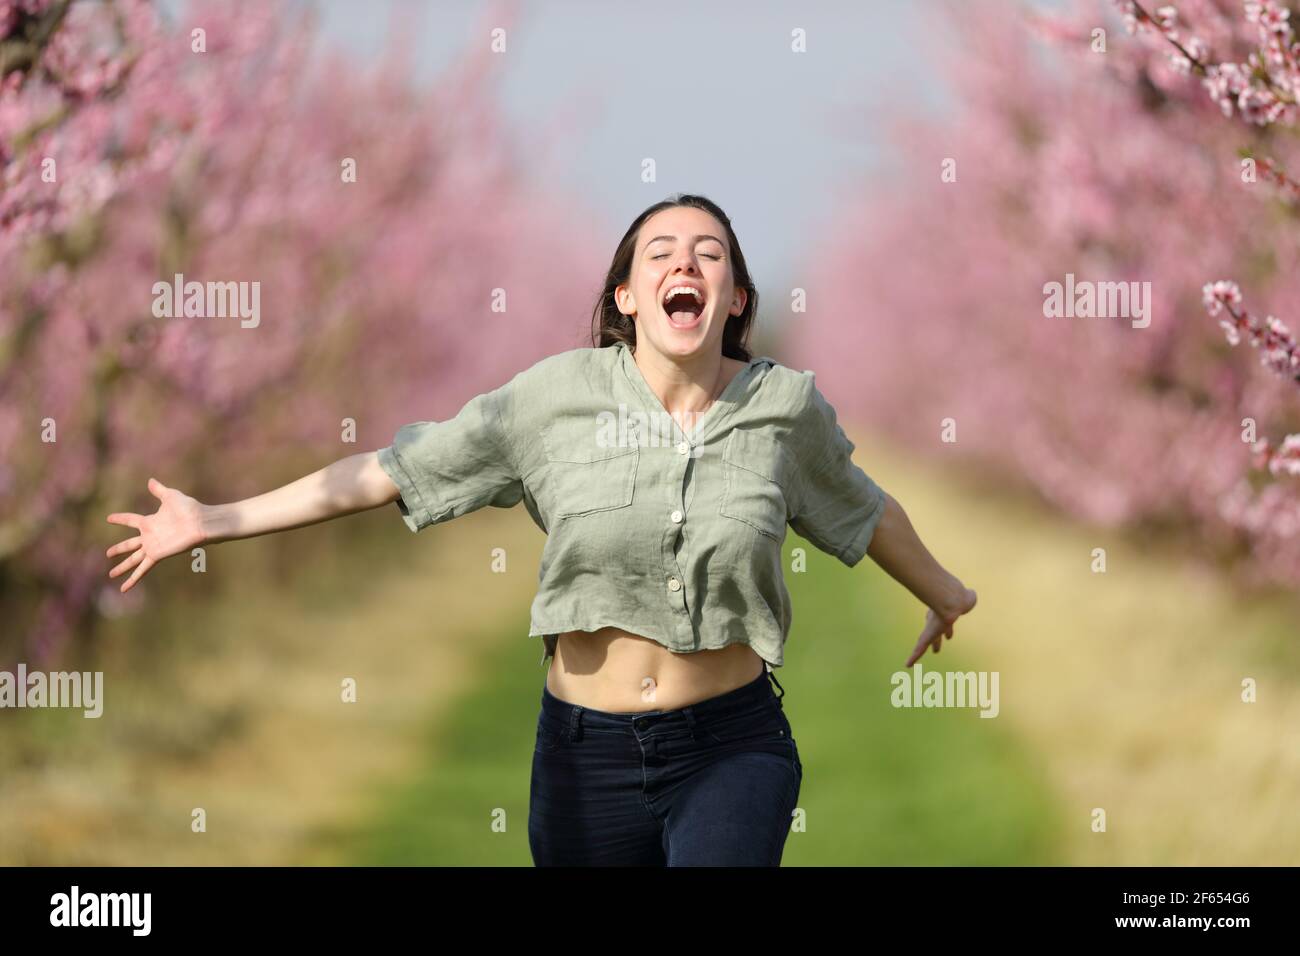 Vorderansicht einer glücklichen Frau, die zur Kamera läuft und feiert Urlaub in einem rosa blühenden Feld im Frühjahr Stockfoto